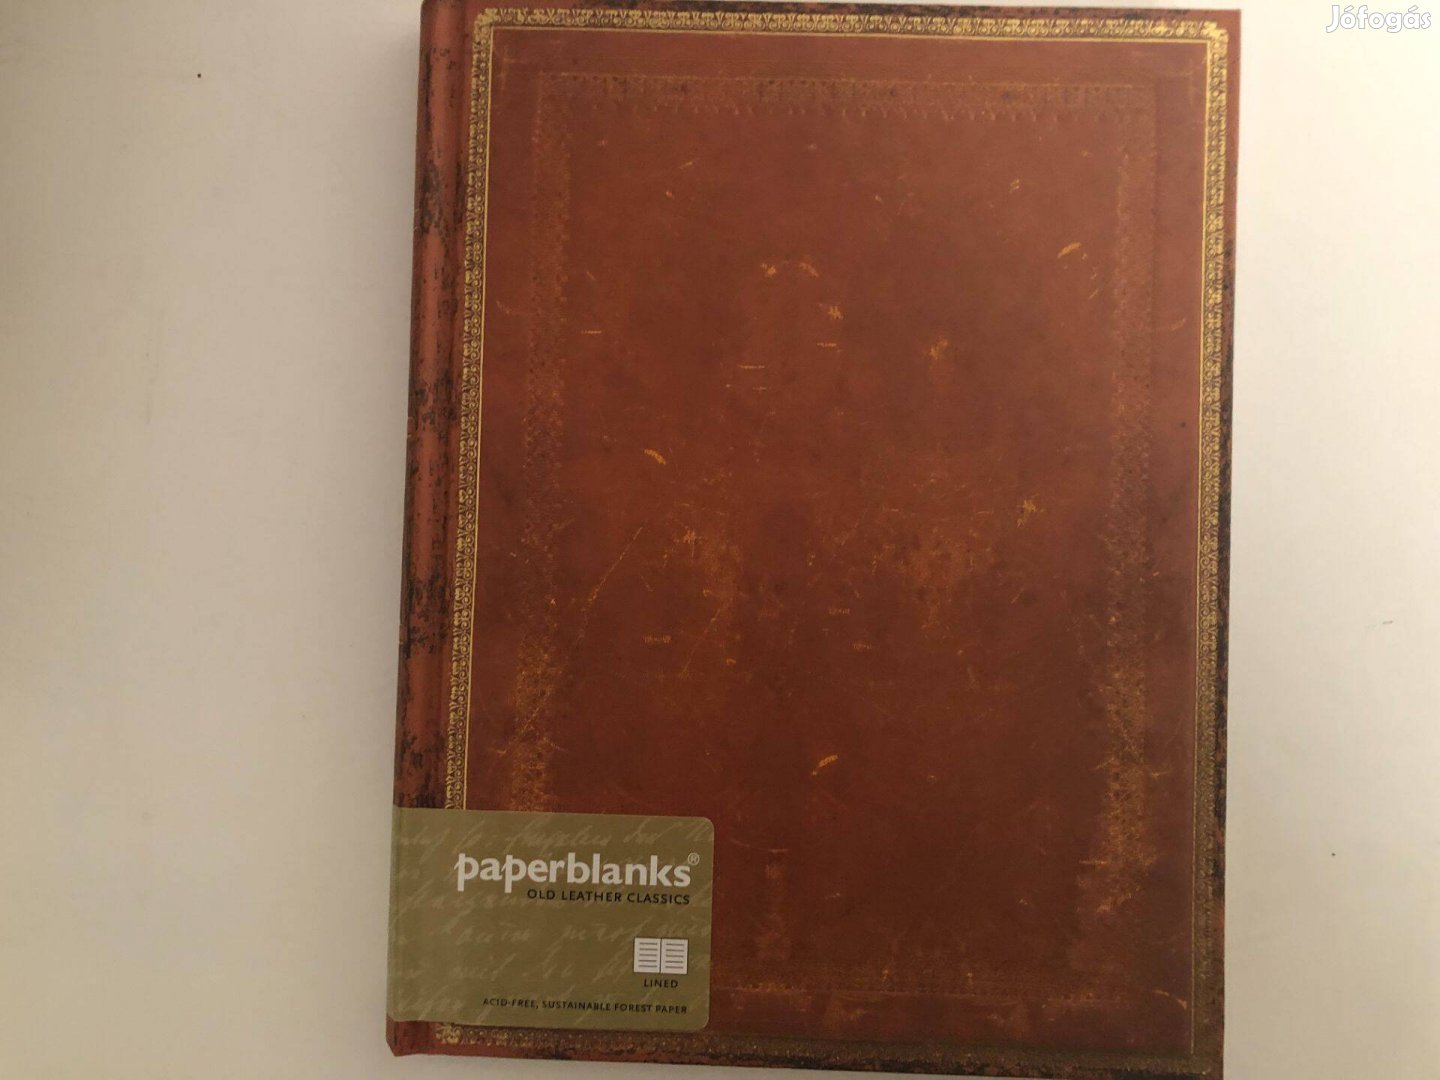 Jegyzetfüzet márka Paperblanks, bélelt, bekötött, méret 18 cm széles